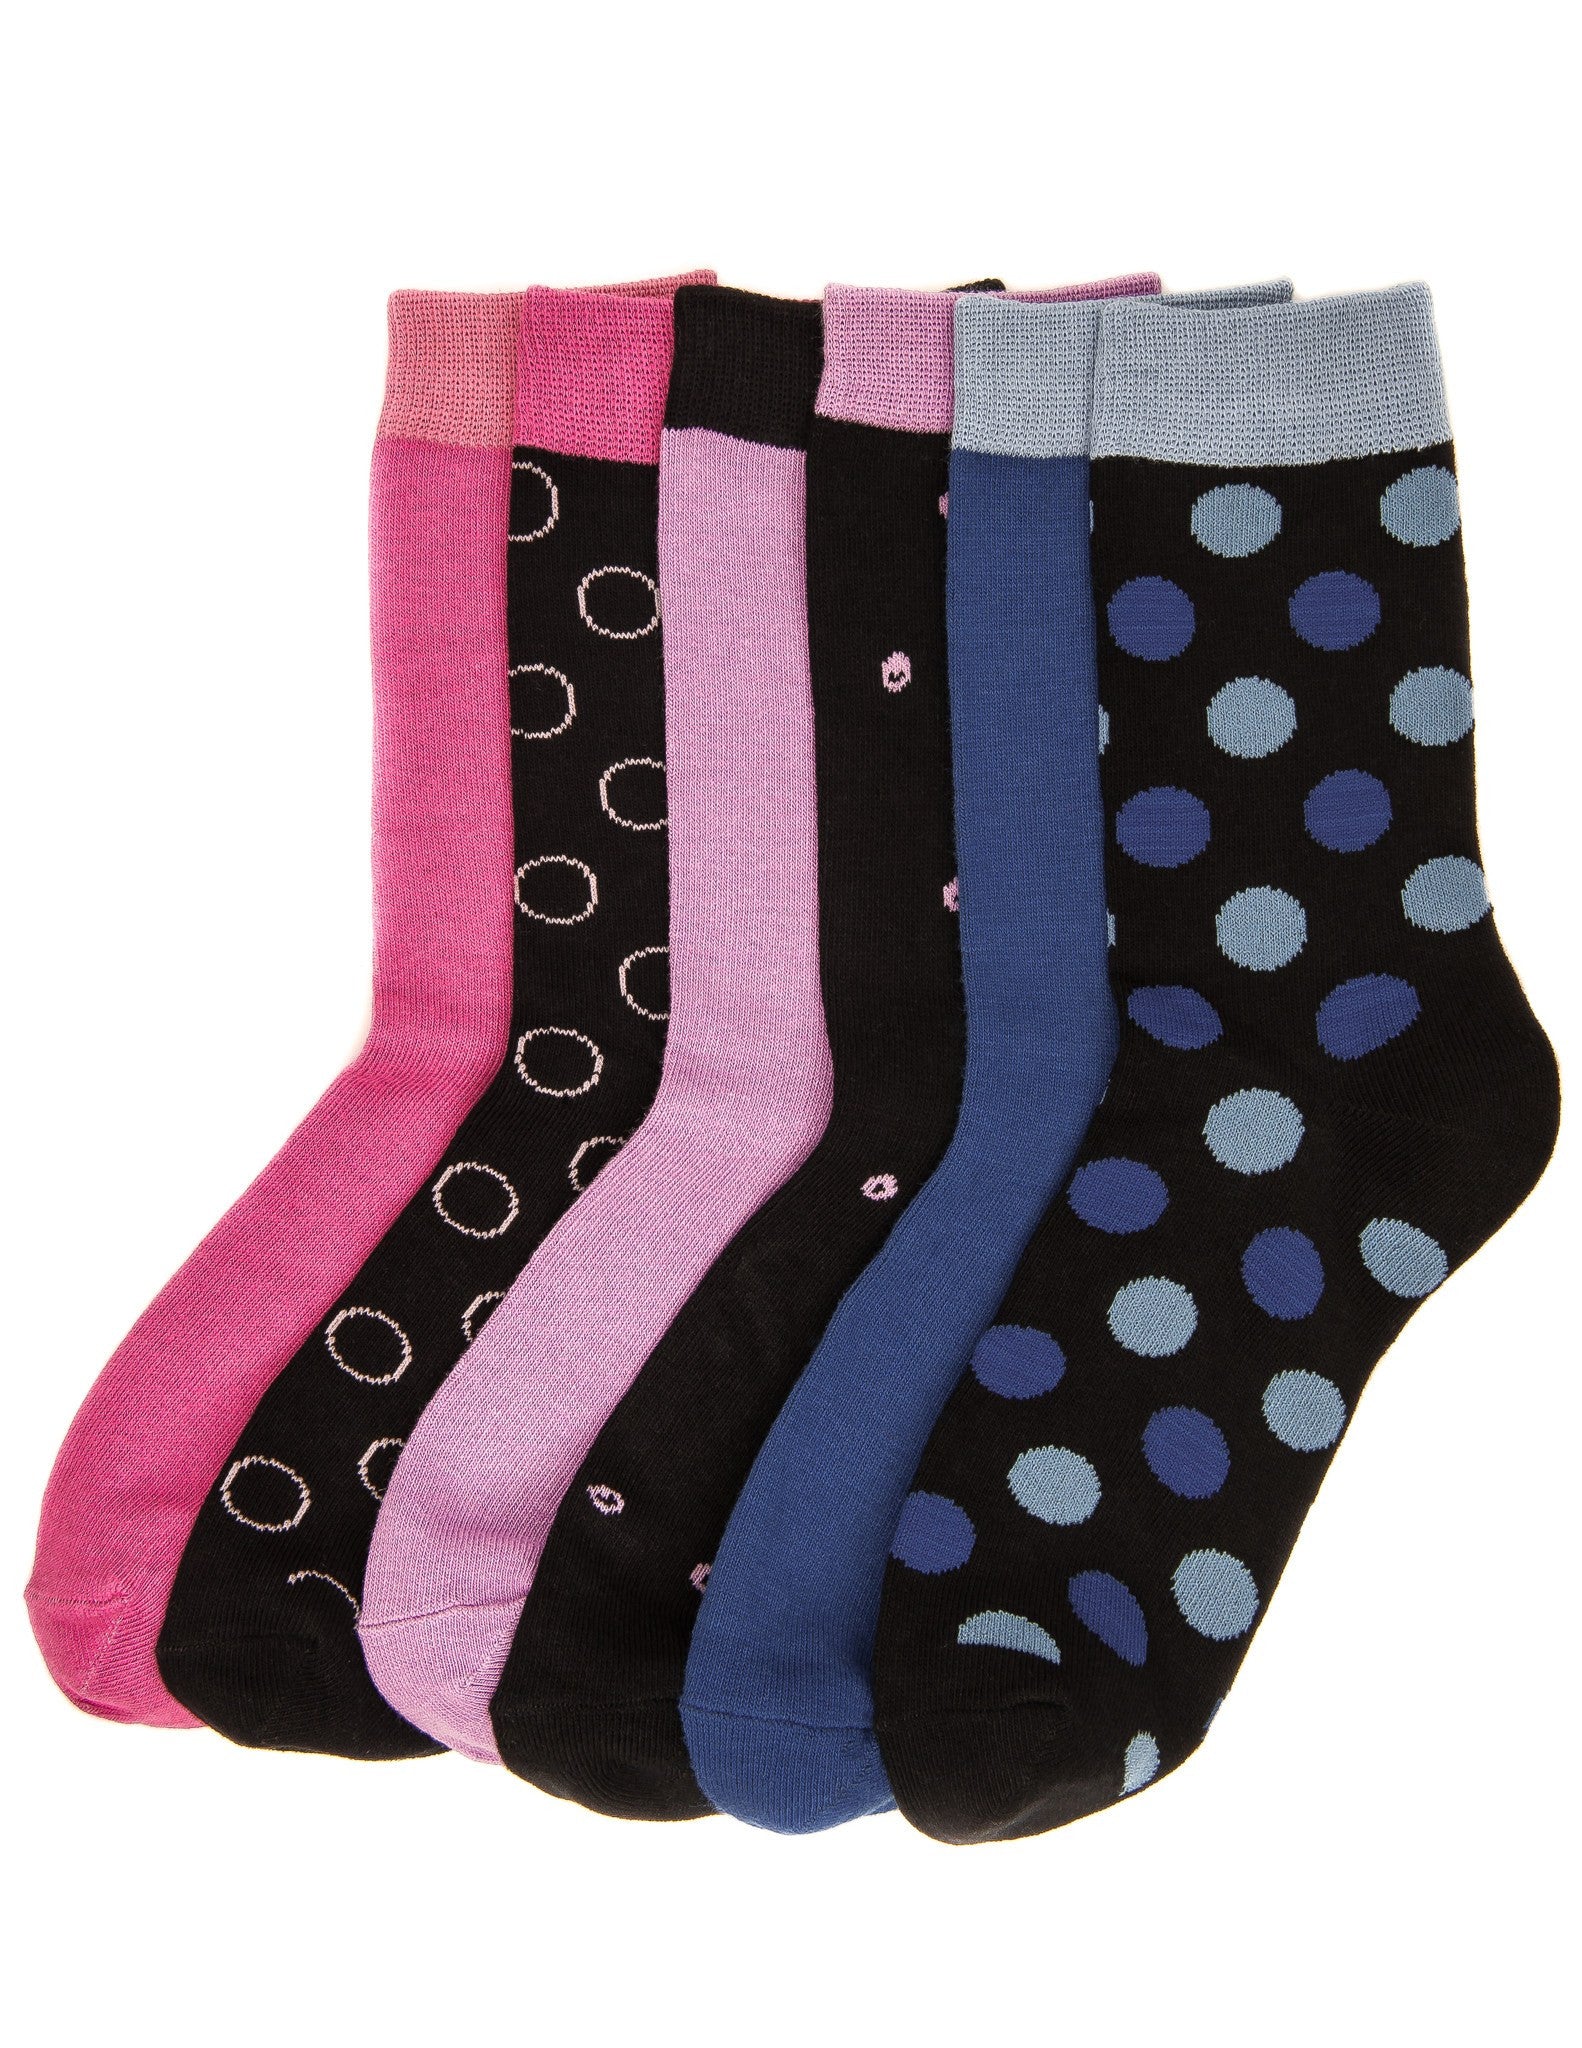 Women's Combed Cotton Premium Crew Socks